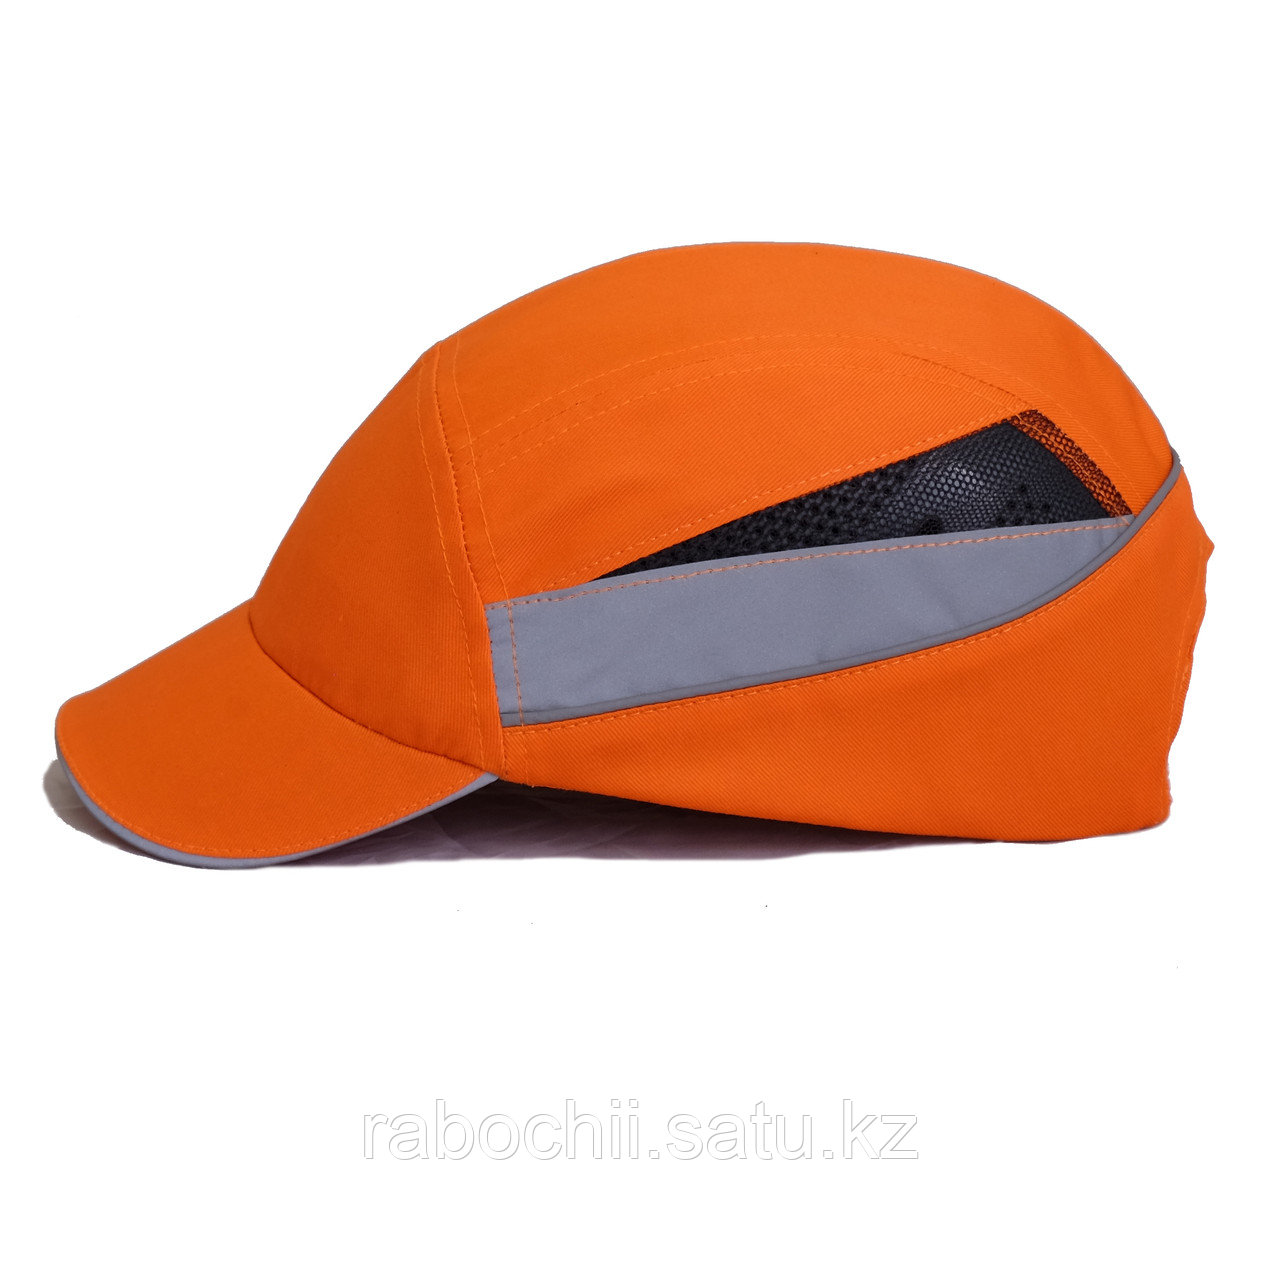 Каскетка защитная RZ BioT CAP оранжевый